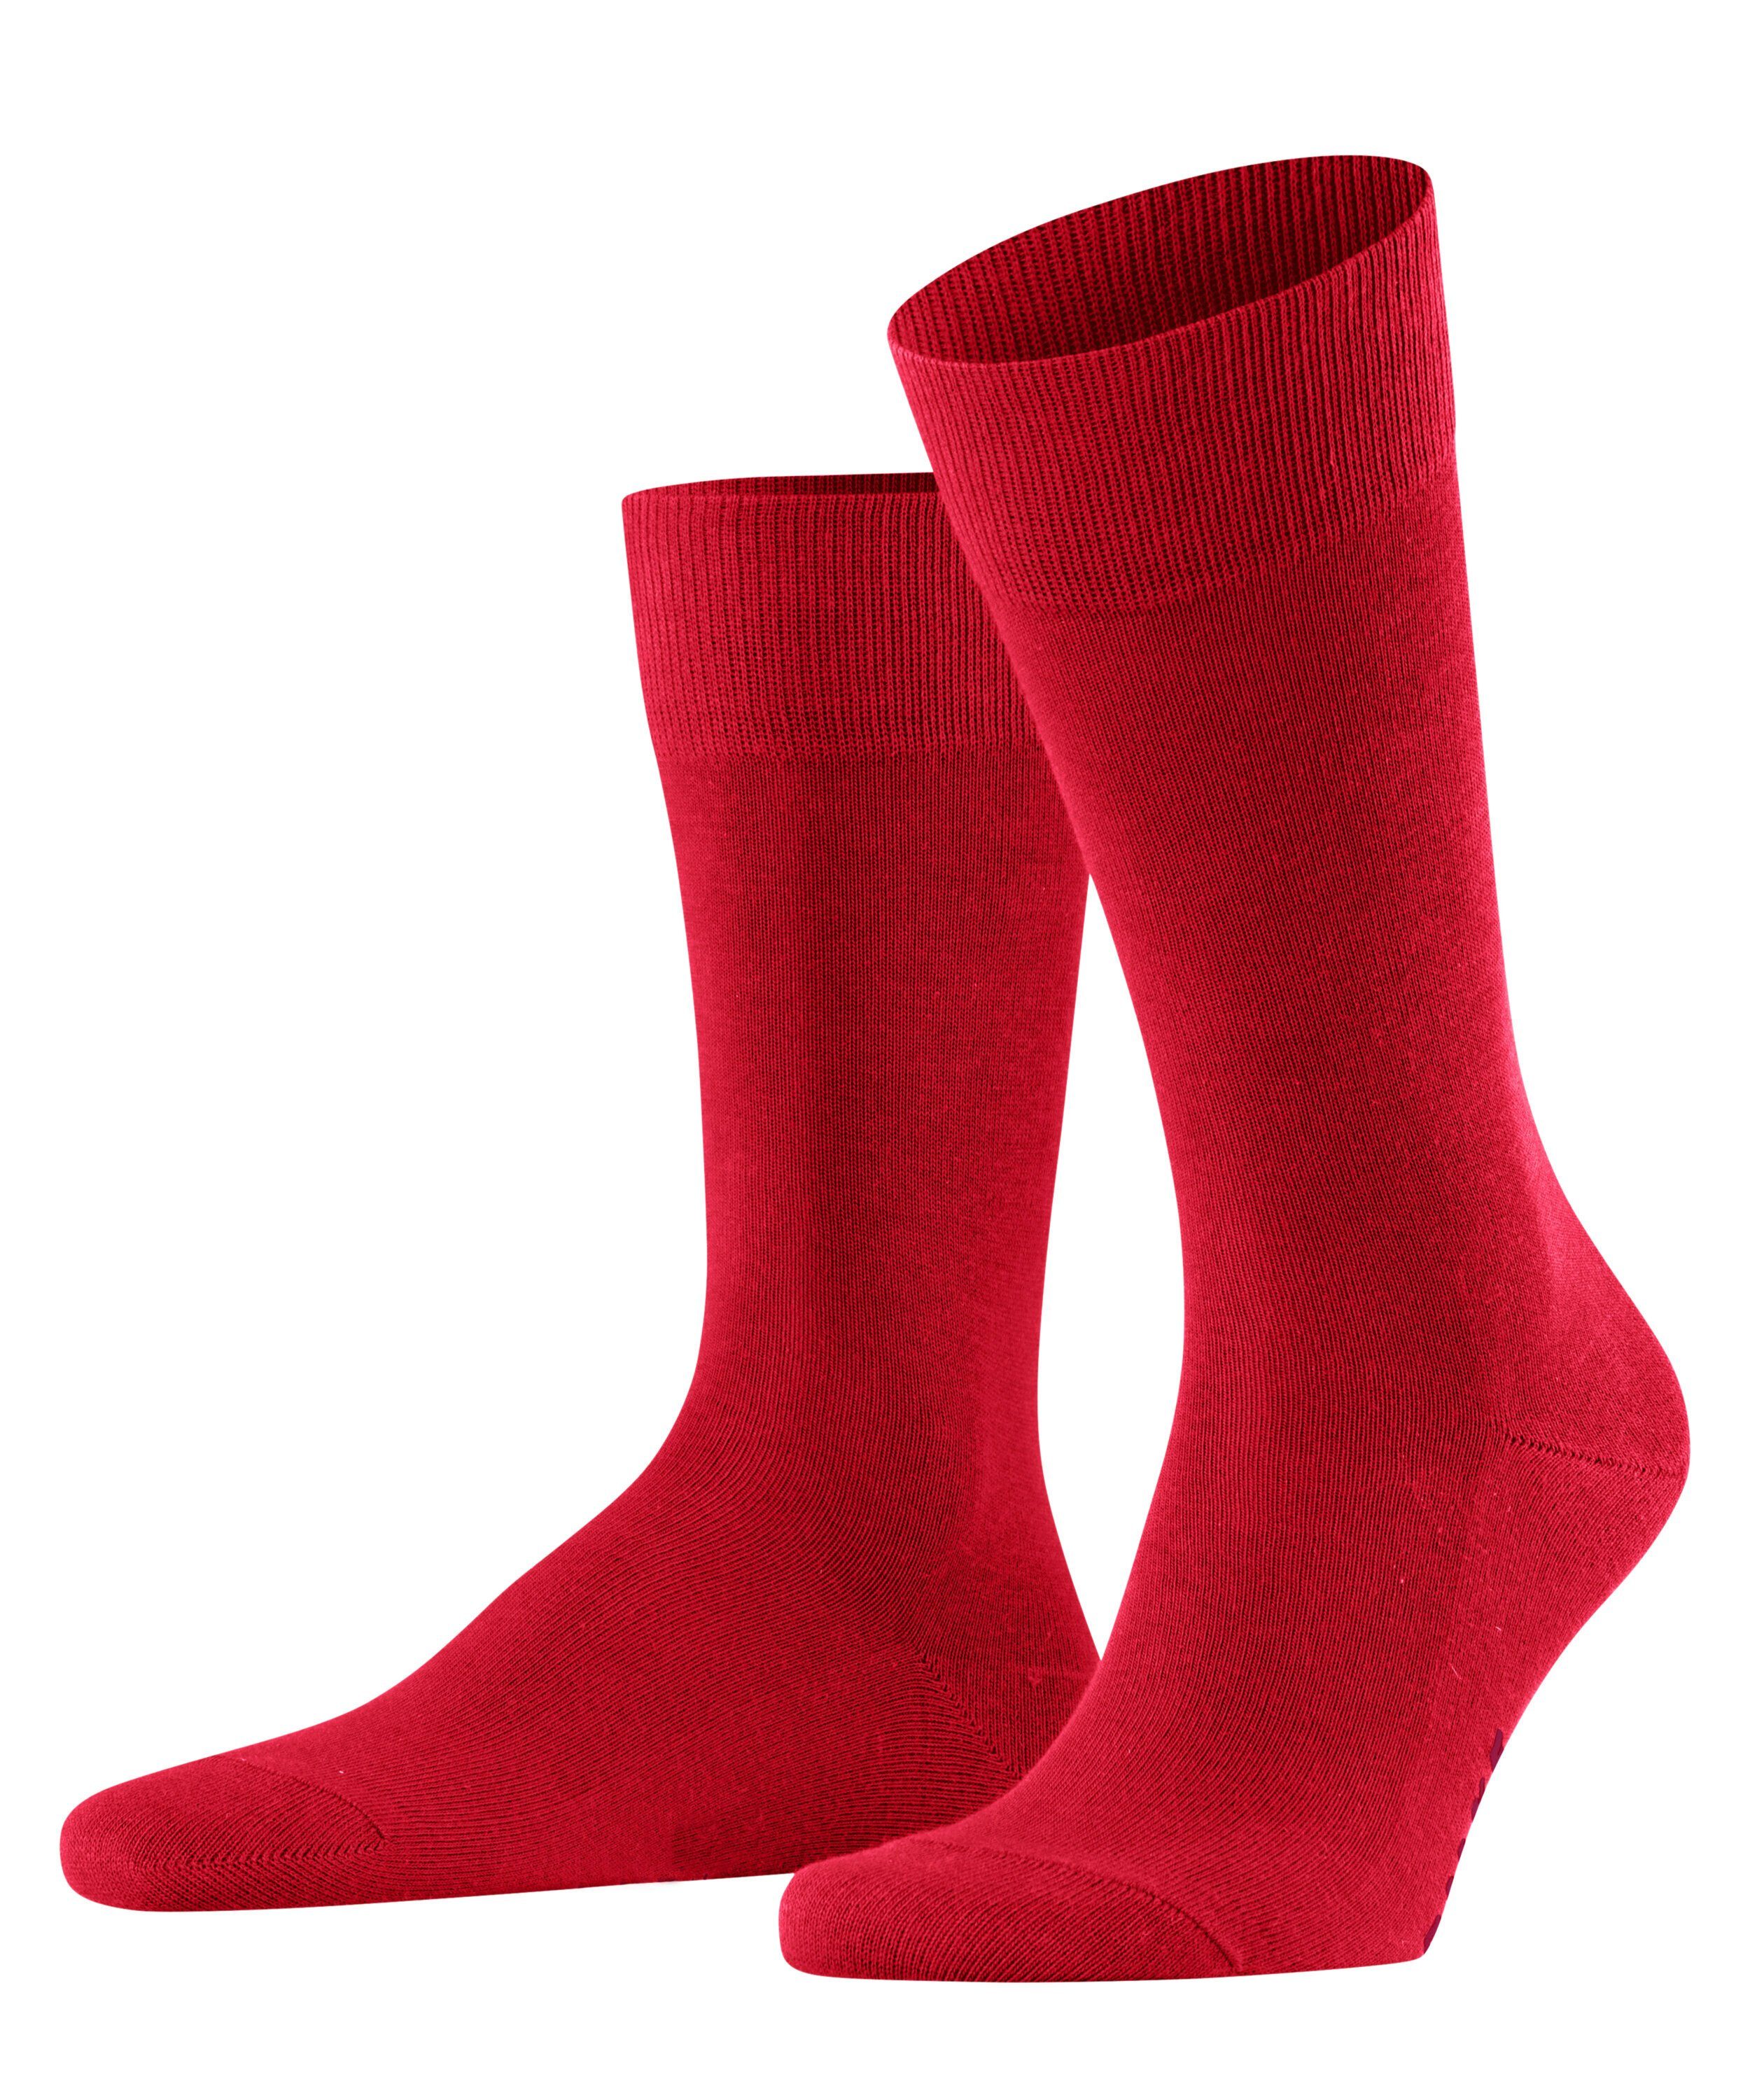 FALKE Socken Family (1-Paar) scarlet (8228)